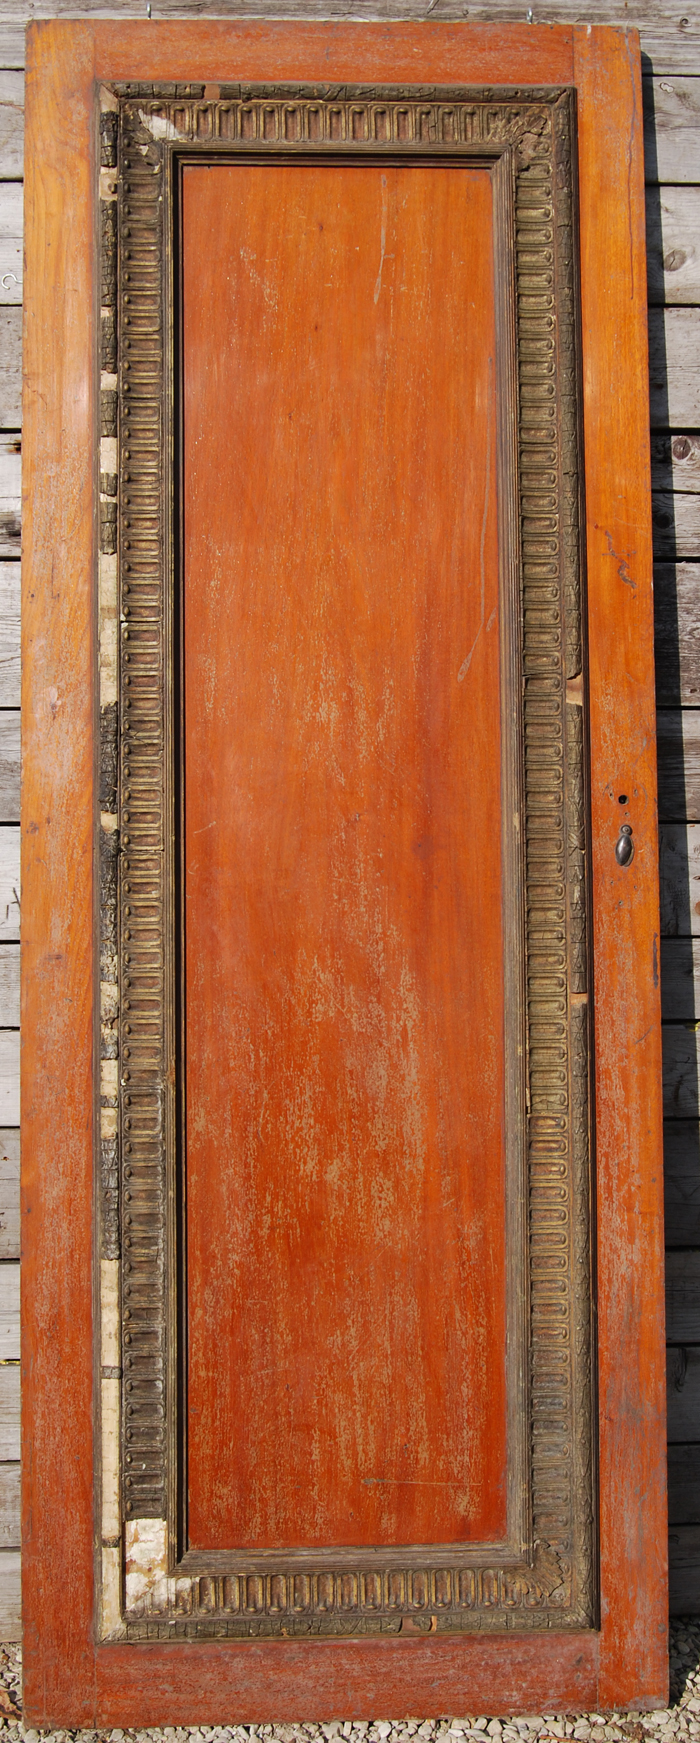 A large single panel mahogany door